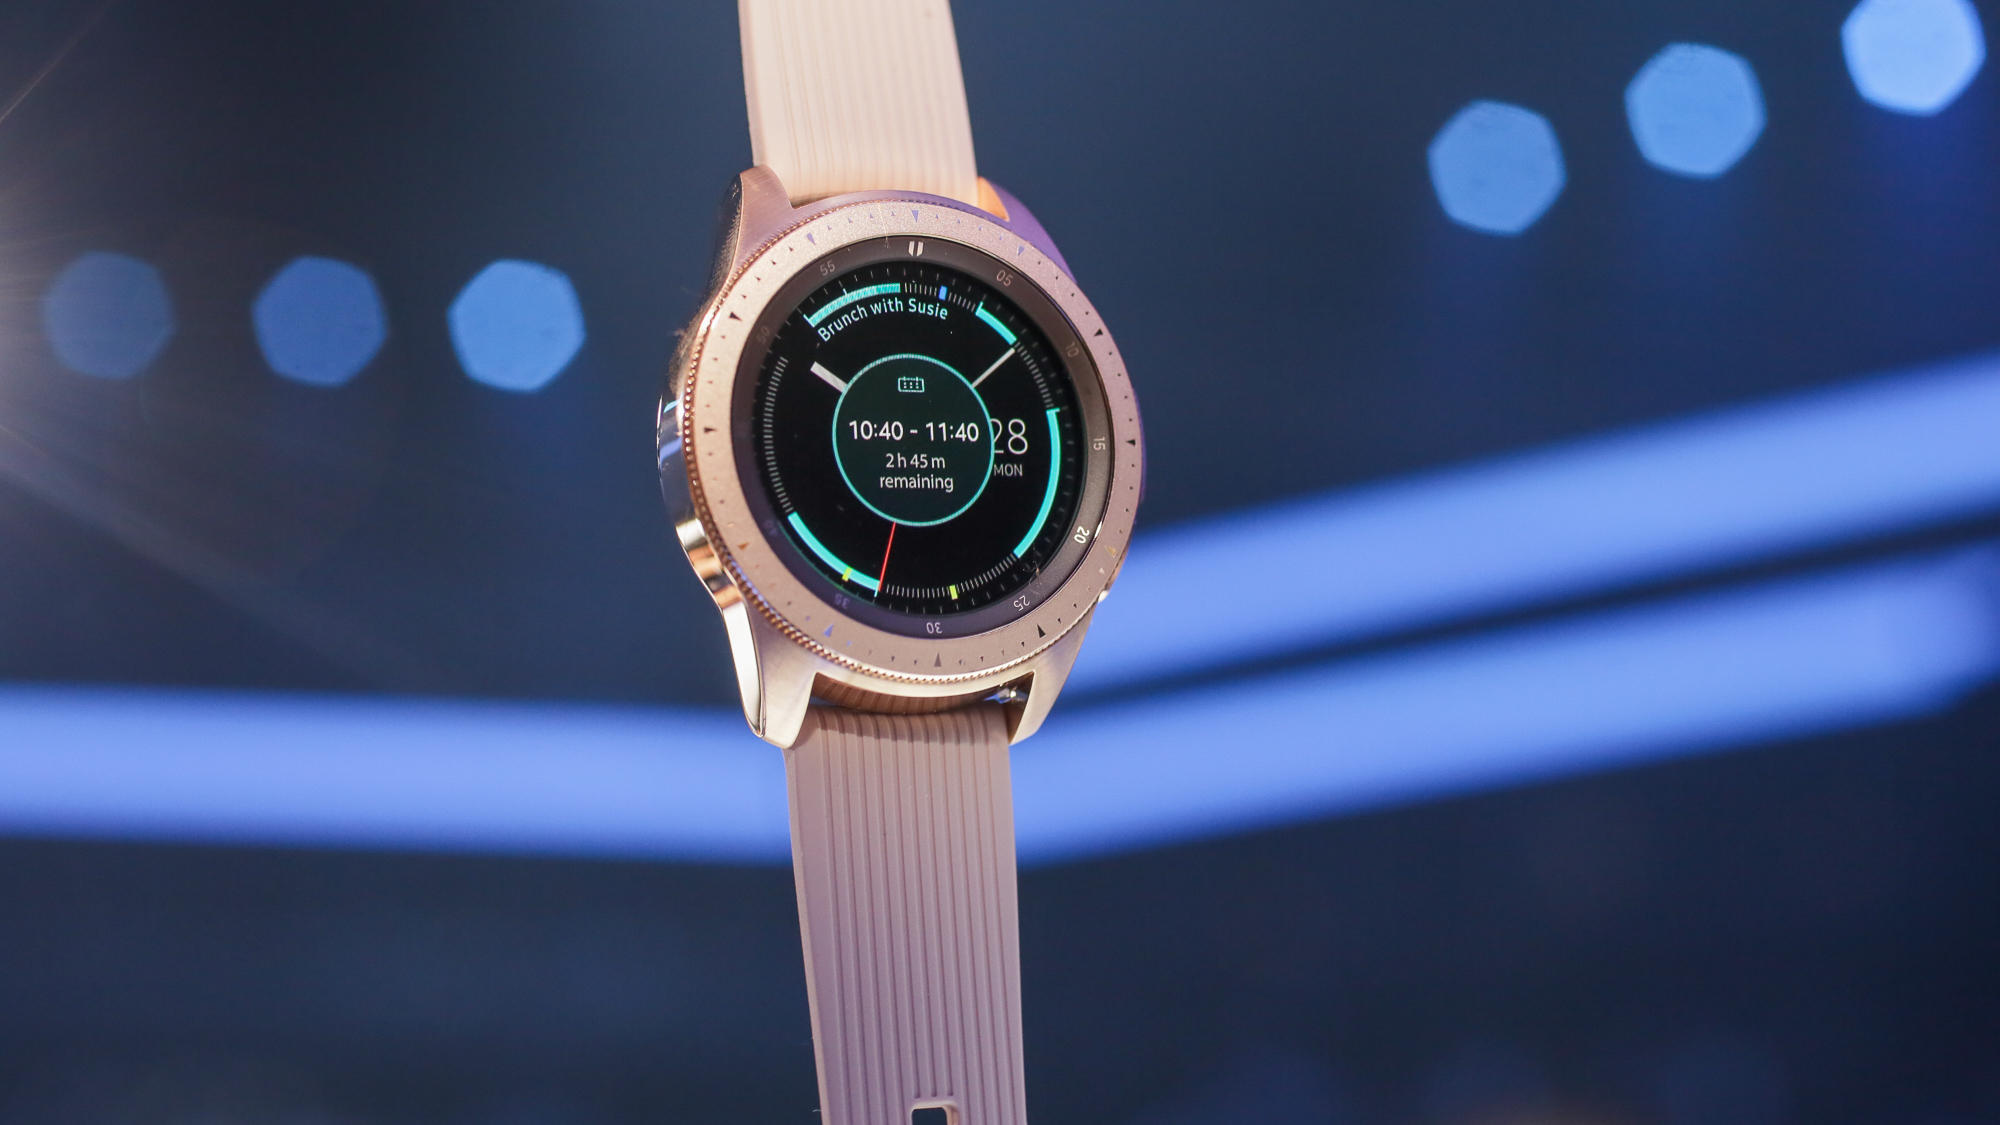 Samsung galaxy watch версии